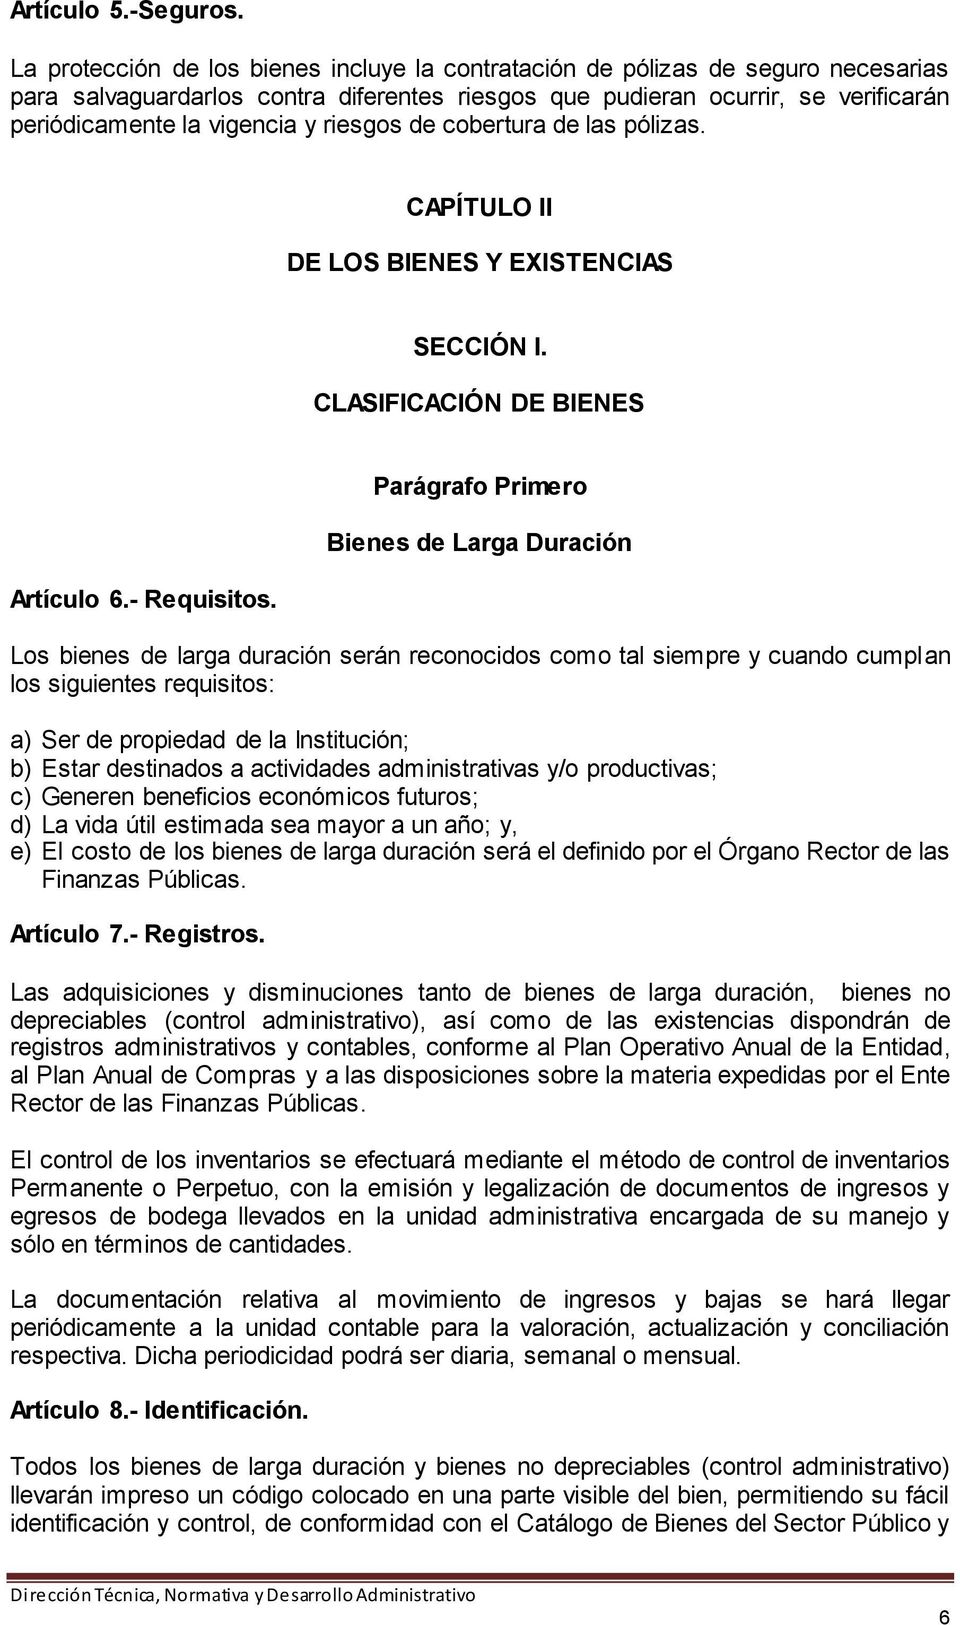 riesgos de cobertura de las pólizas. CAPÍTULO II DE LOS BIENES Y EXISTENCIAS SECCIÓN I. CLASIFICACIÓN DE BIENES Artículo 6.- Requisitos.